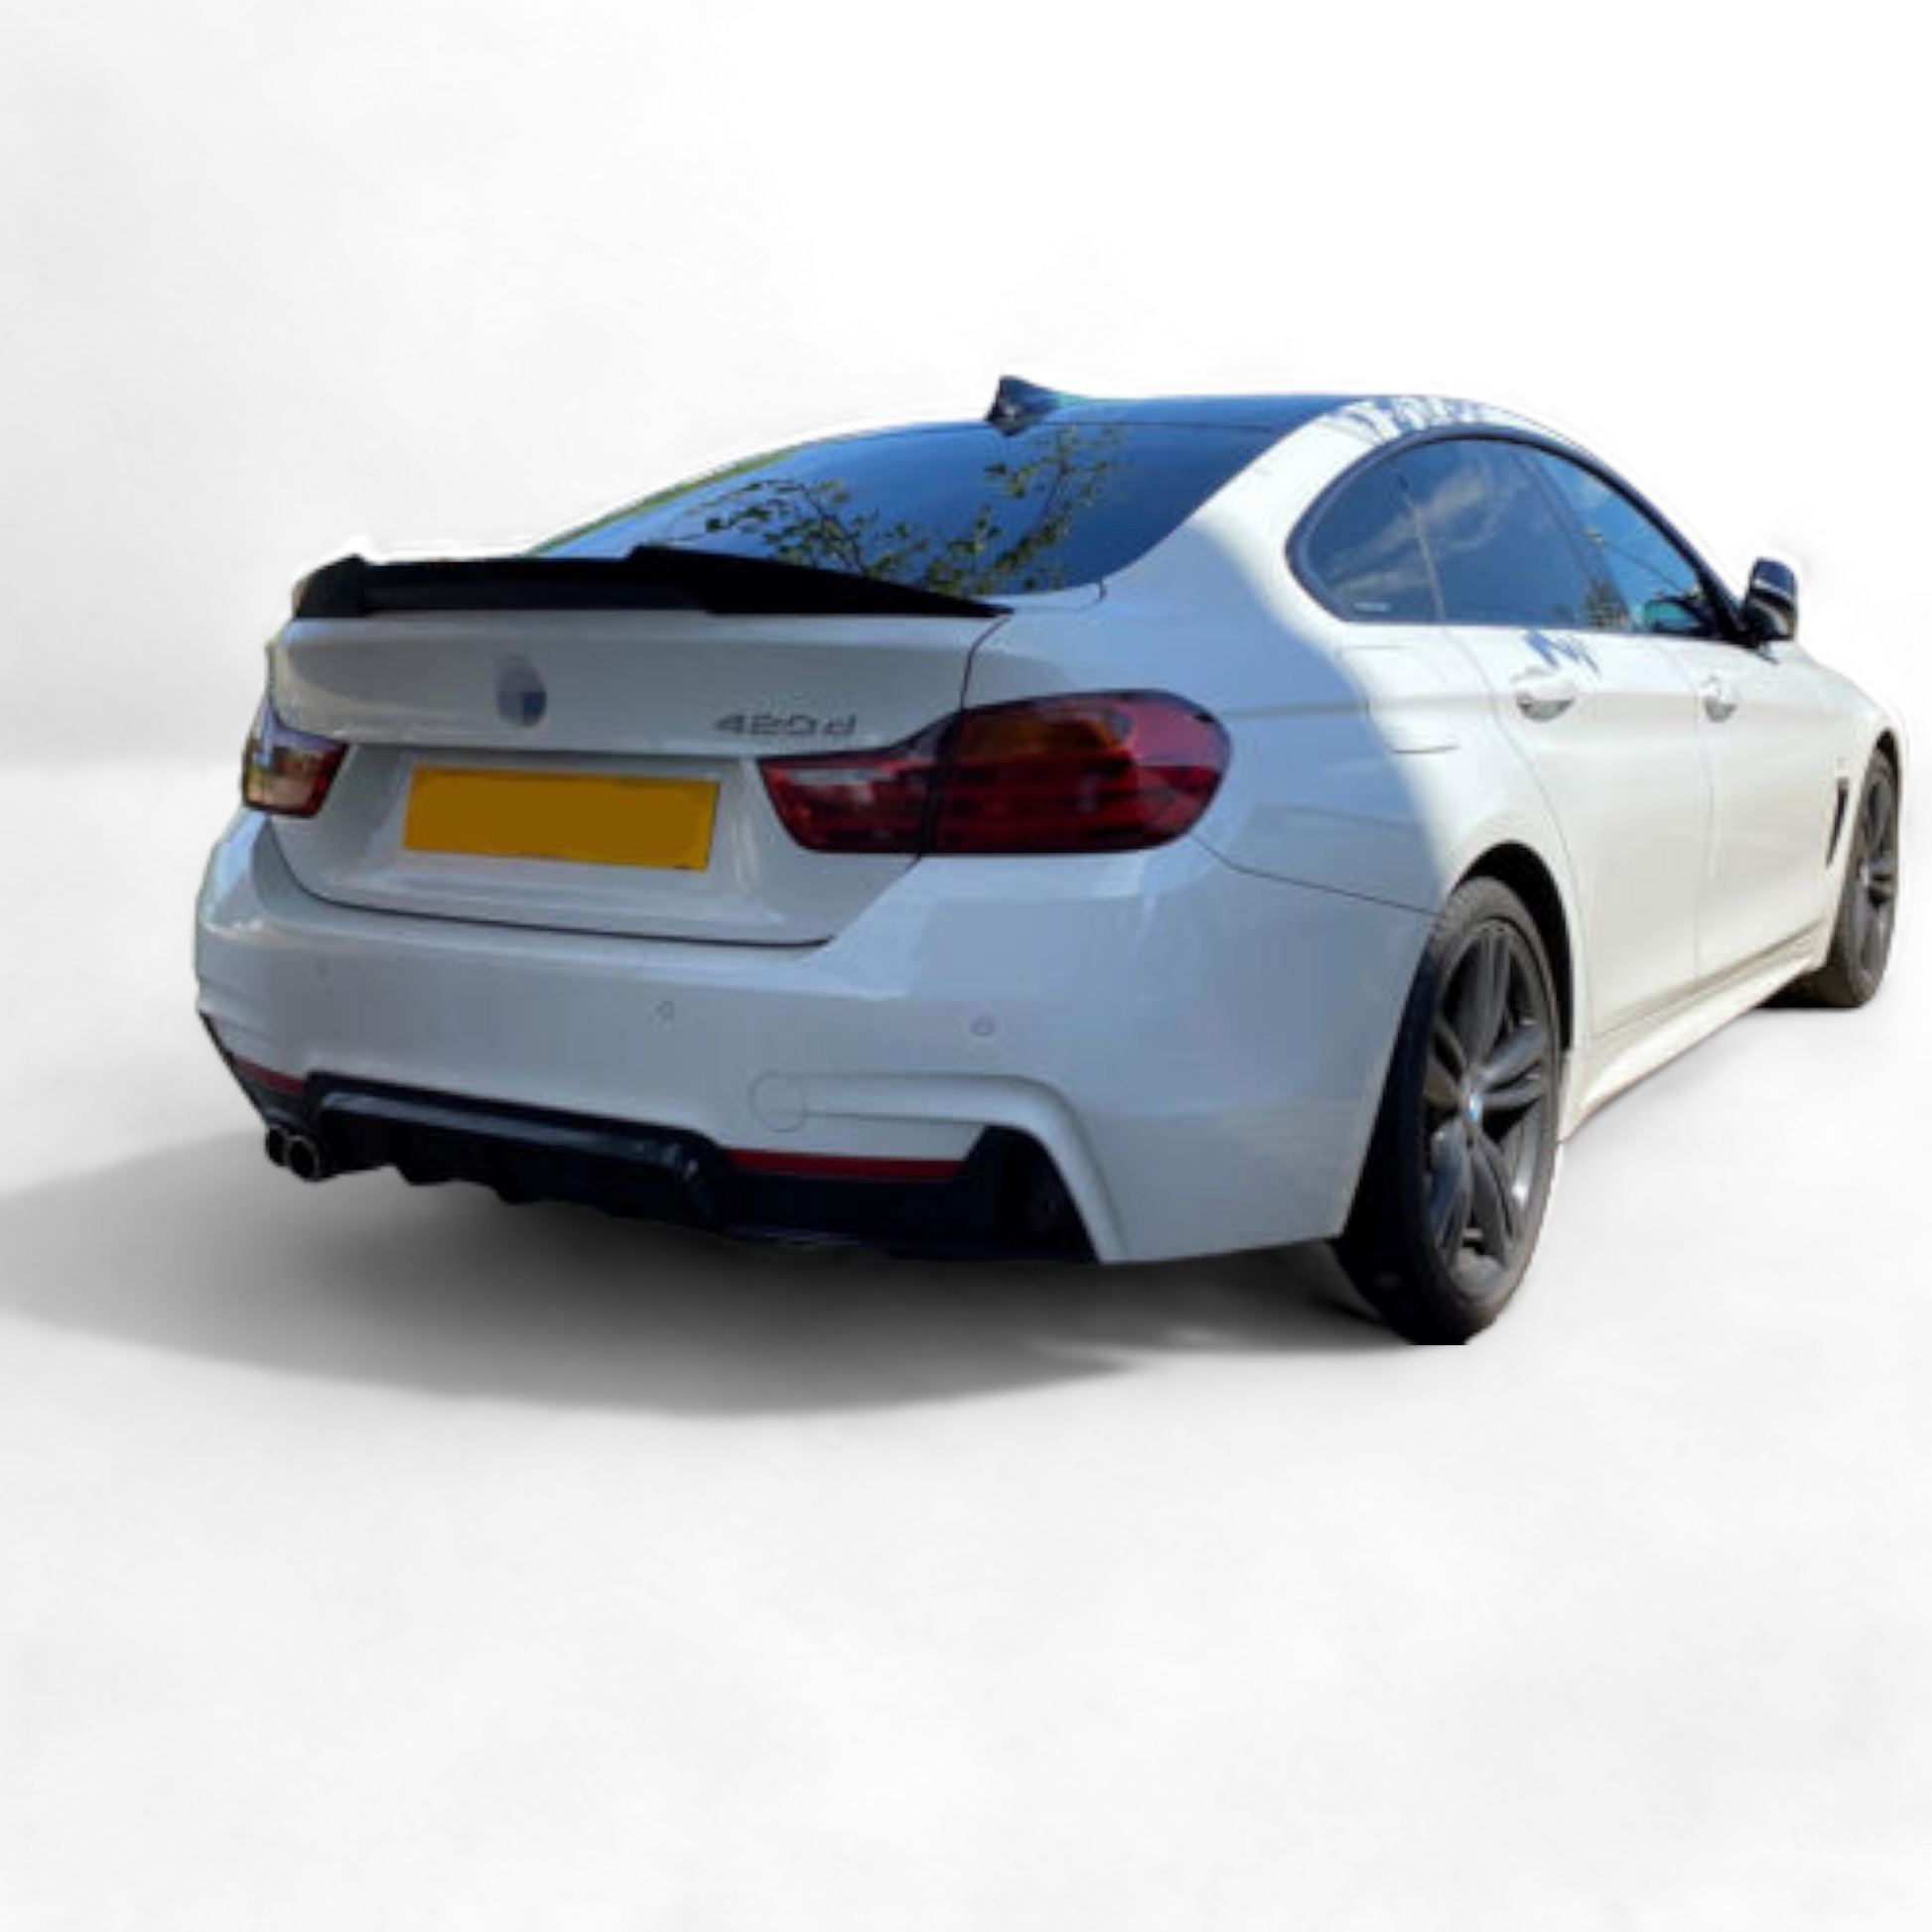 BMW F36 4 Series Gran Coupé Spoiler – KITS UK